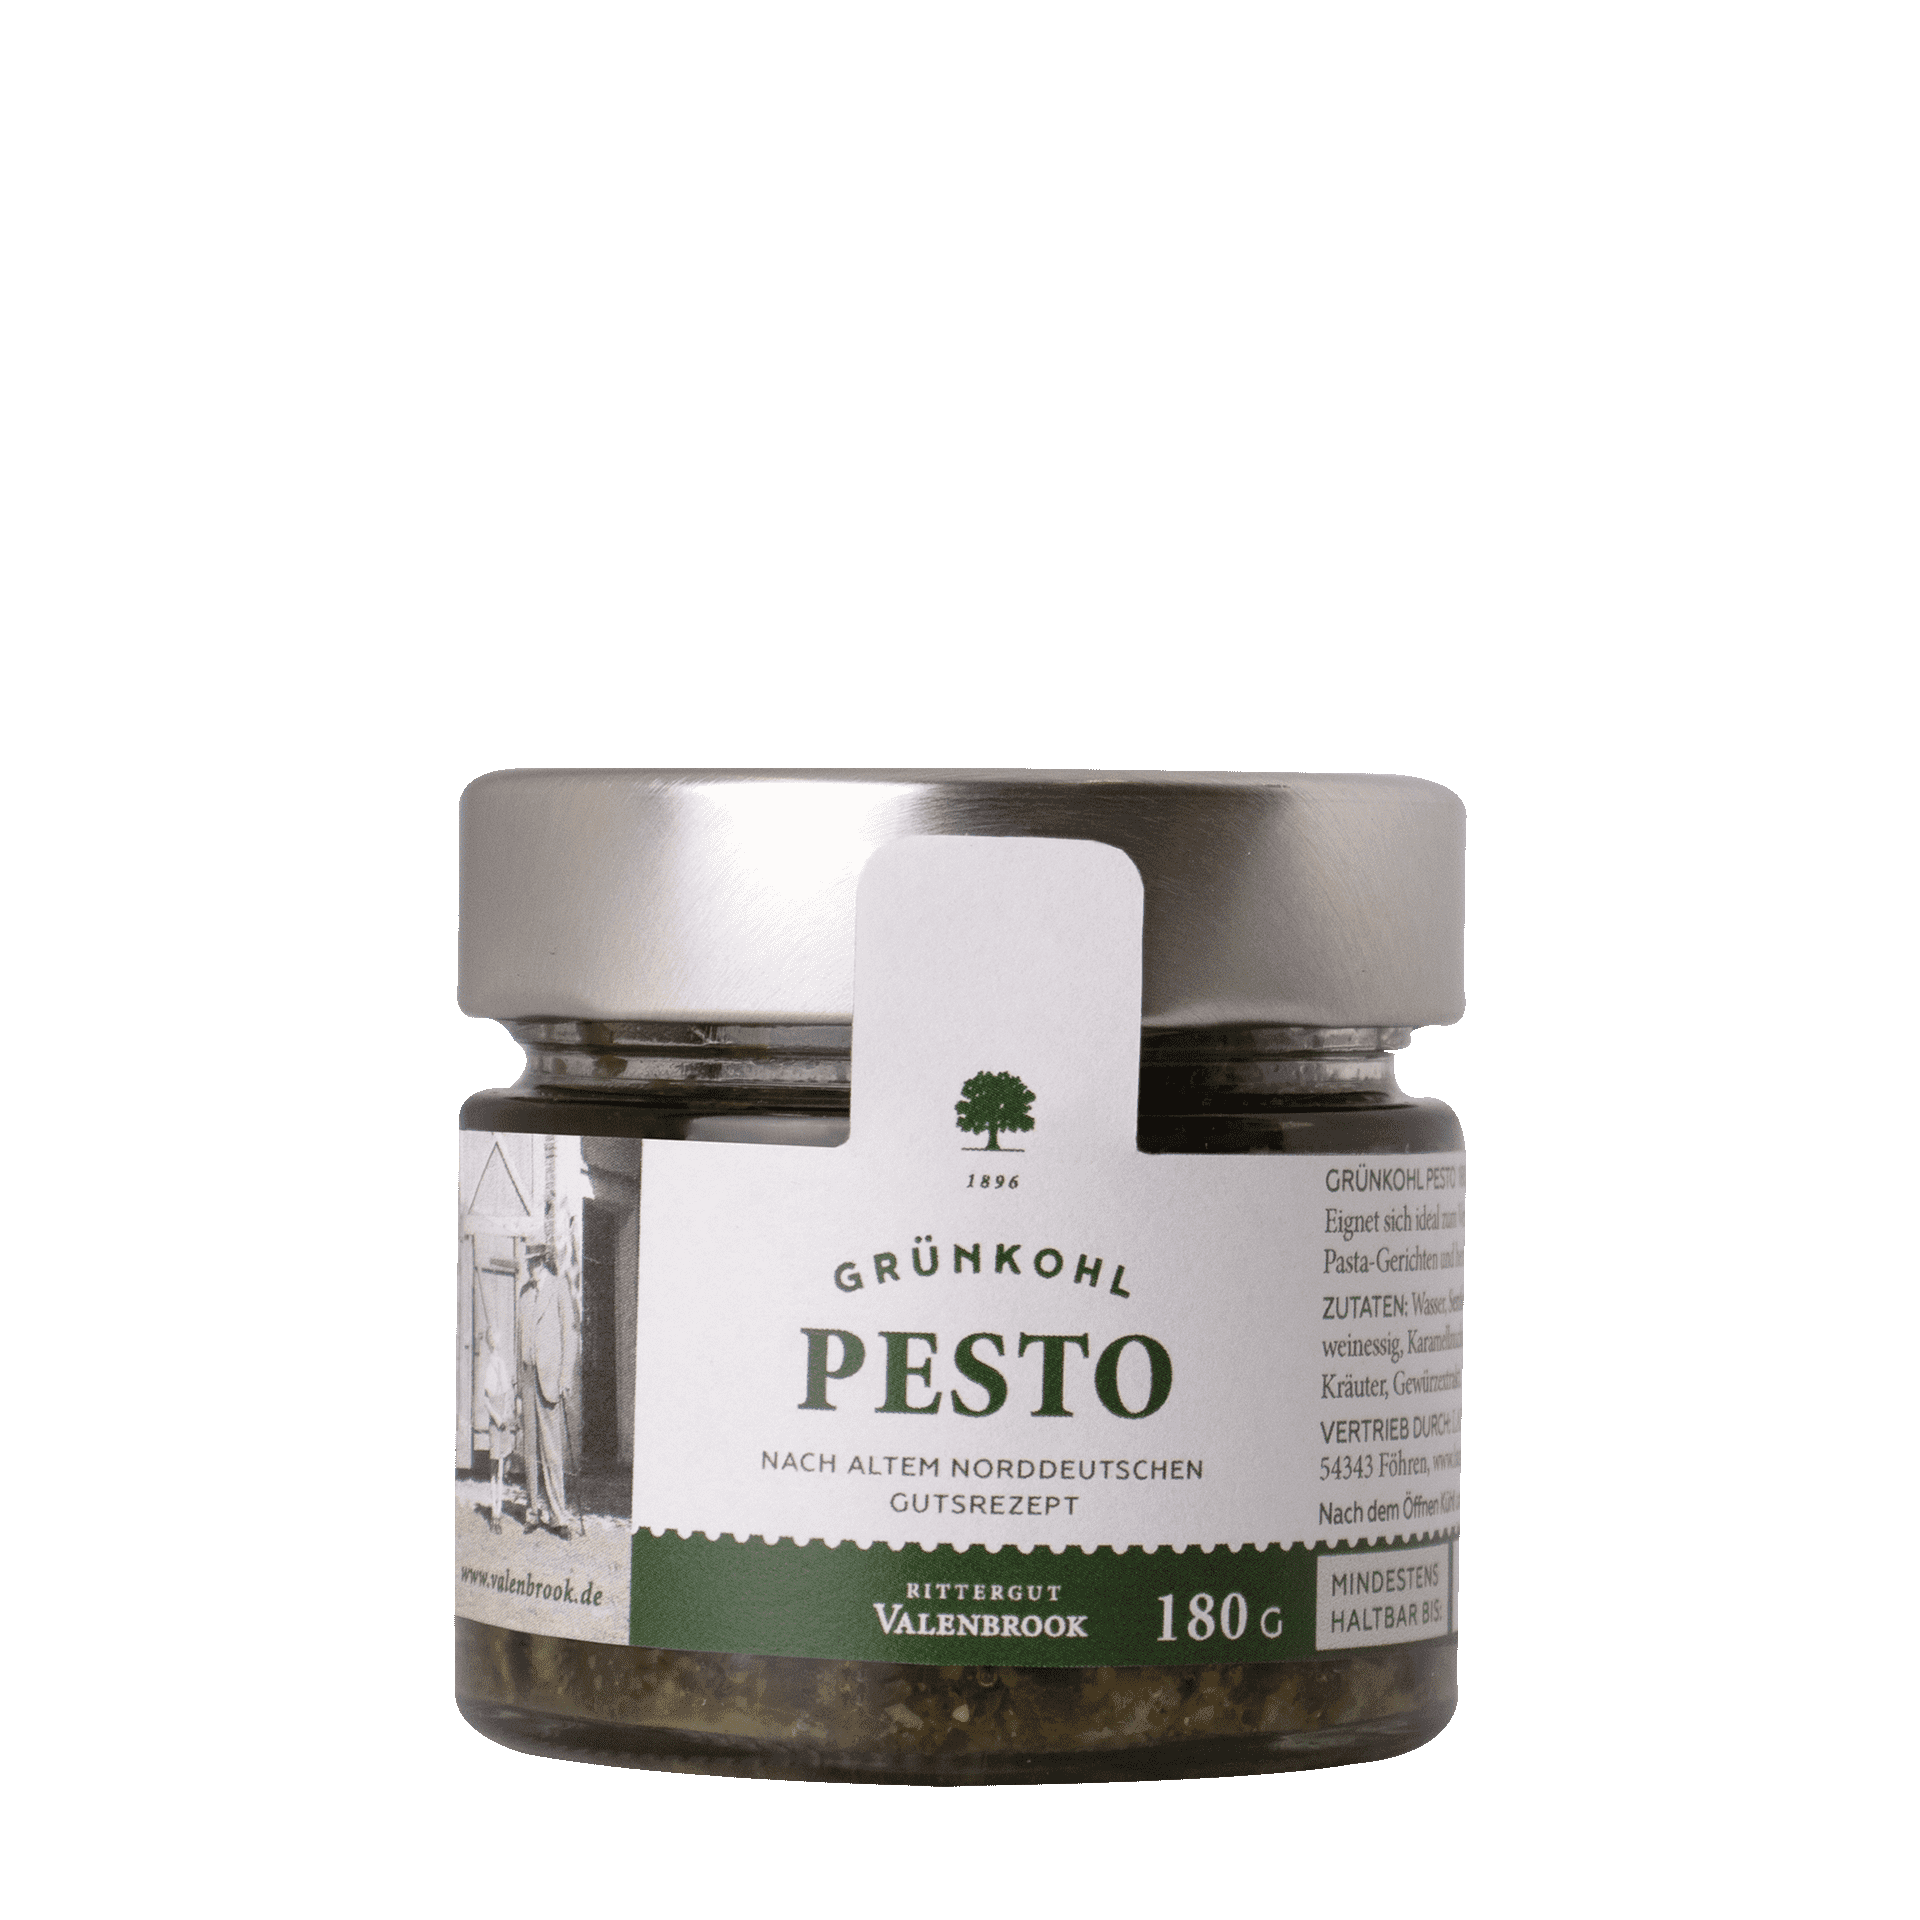 Grünkohl Pesto